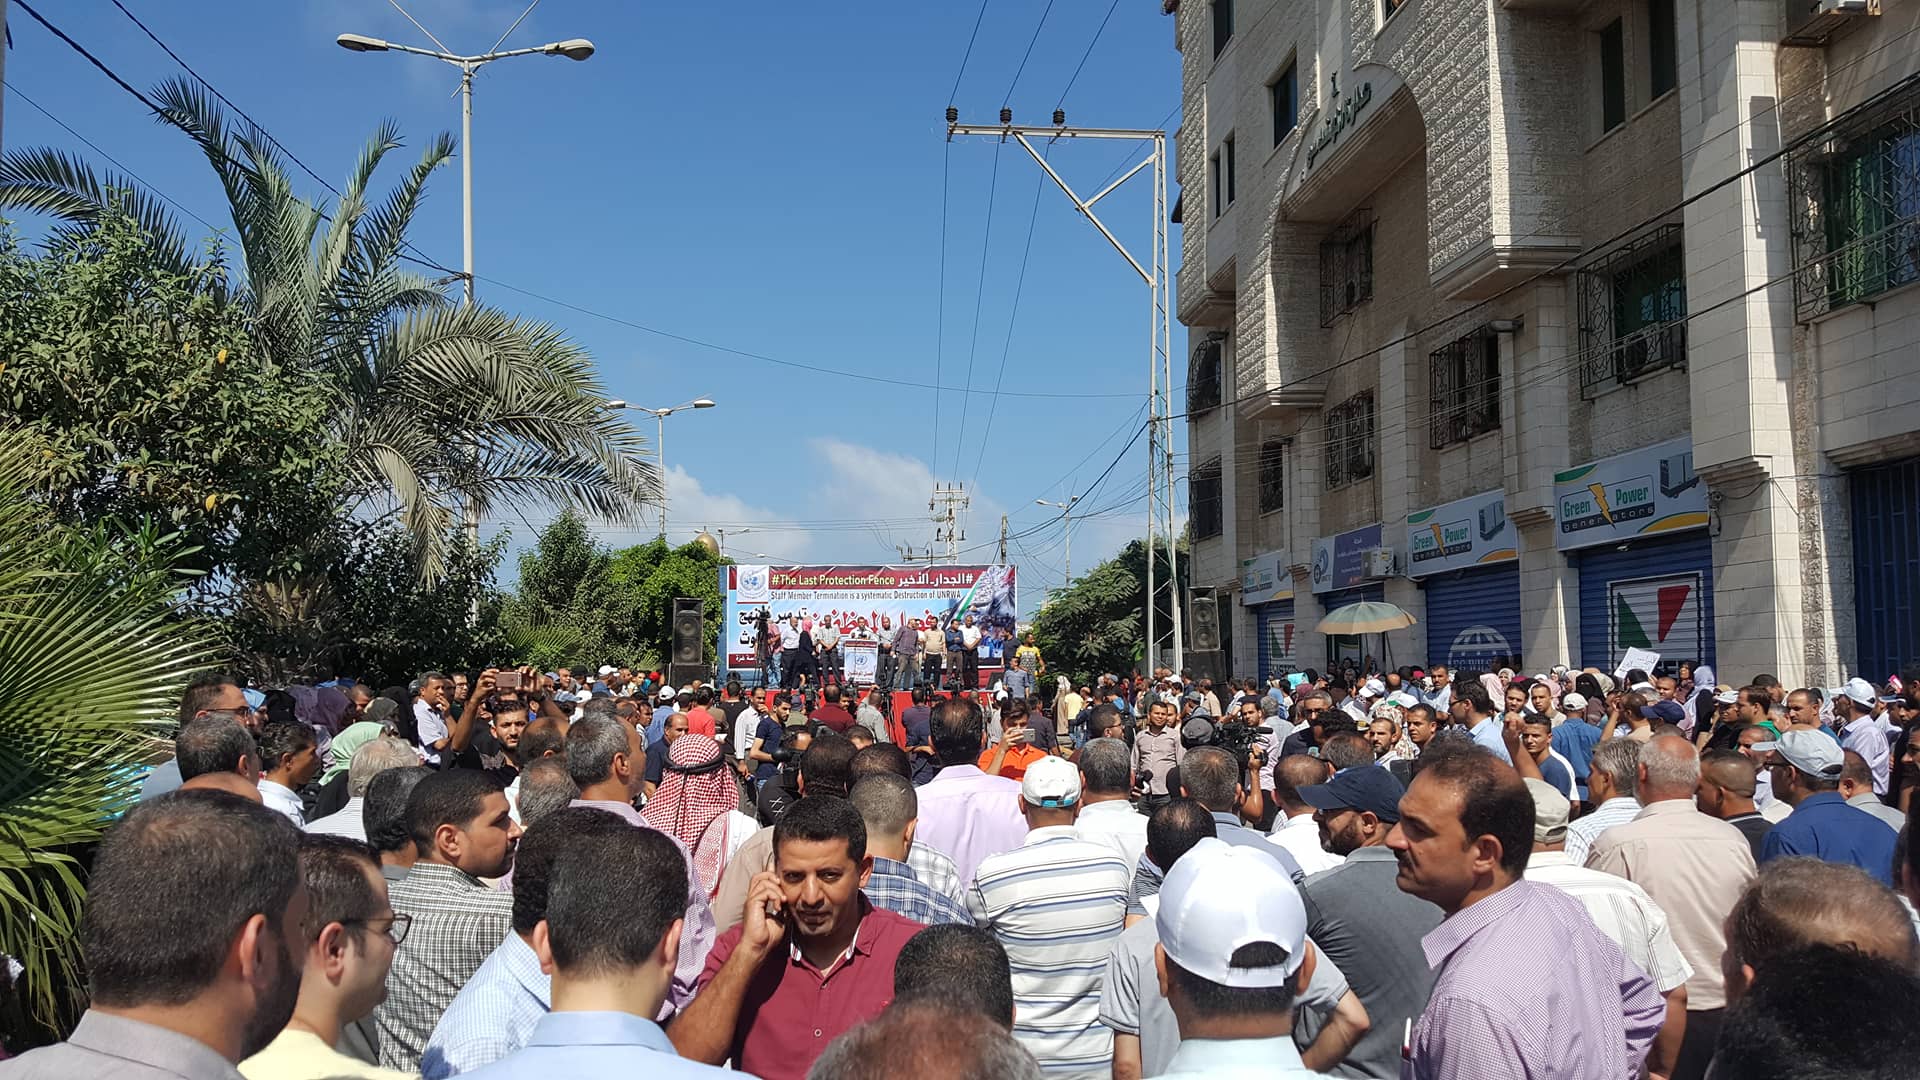 اتحاد موظفي الاونروا بغزة يعلن الاضراب الشامل الاثنين القادم بعد فشل المفاوضات مع الادارة